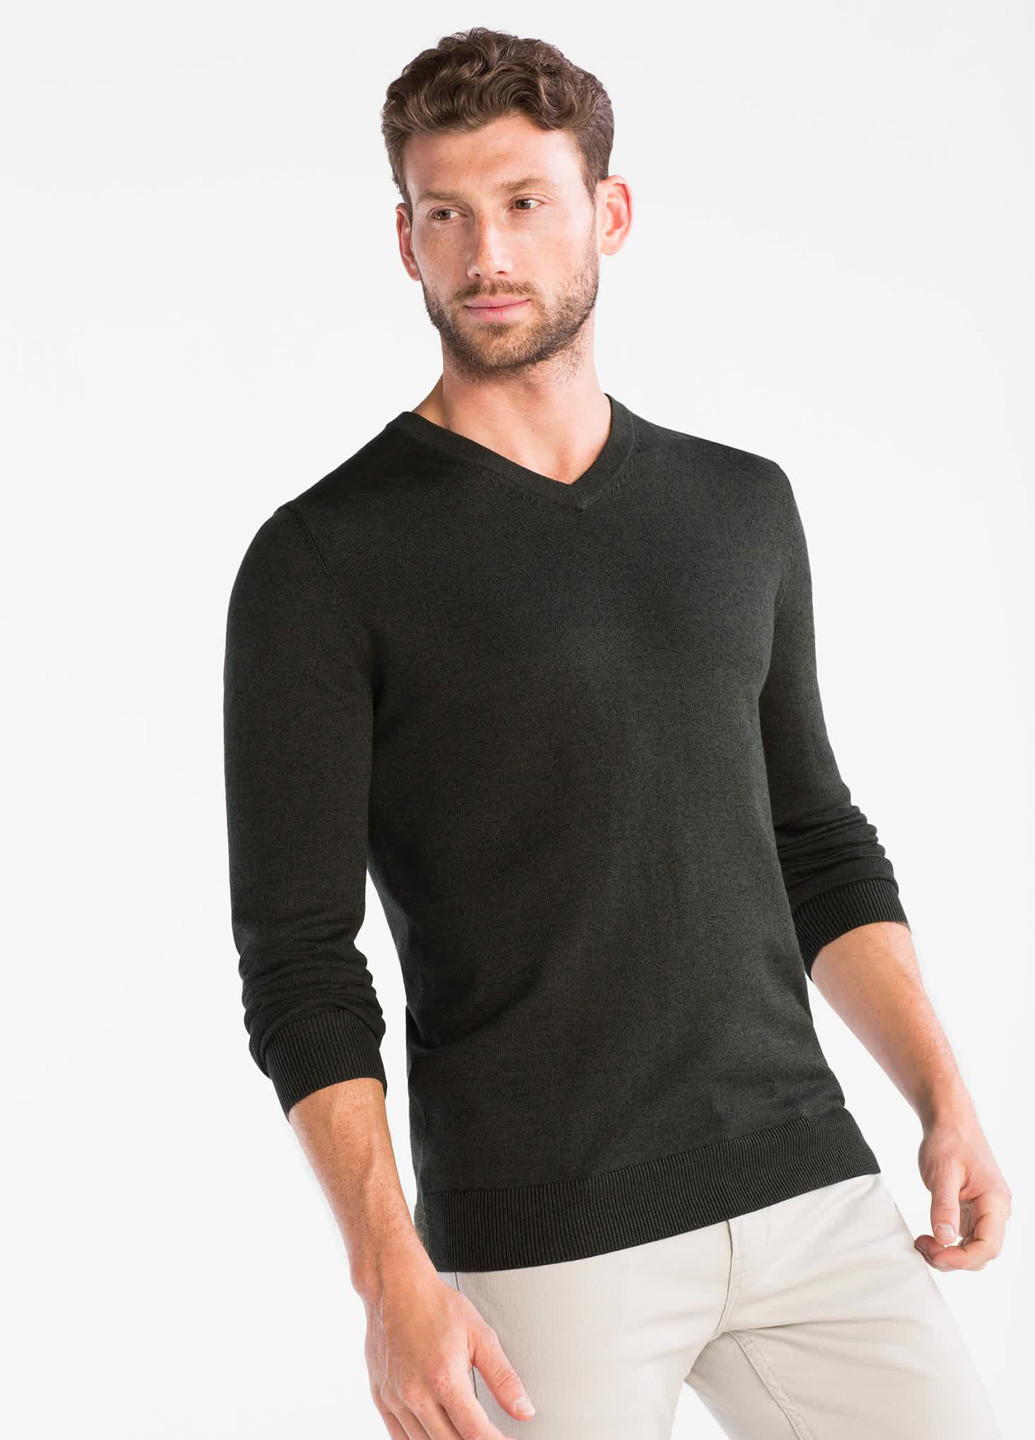 Оливковый (хаки) демисезонный пуловер пуловер C&A